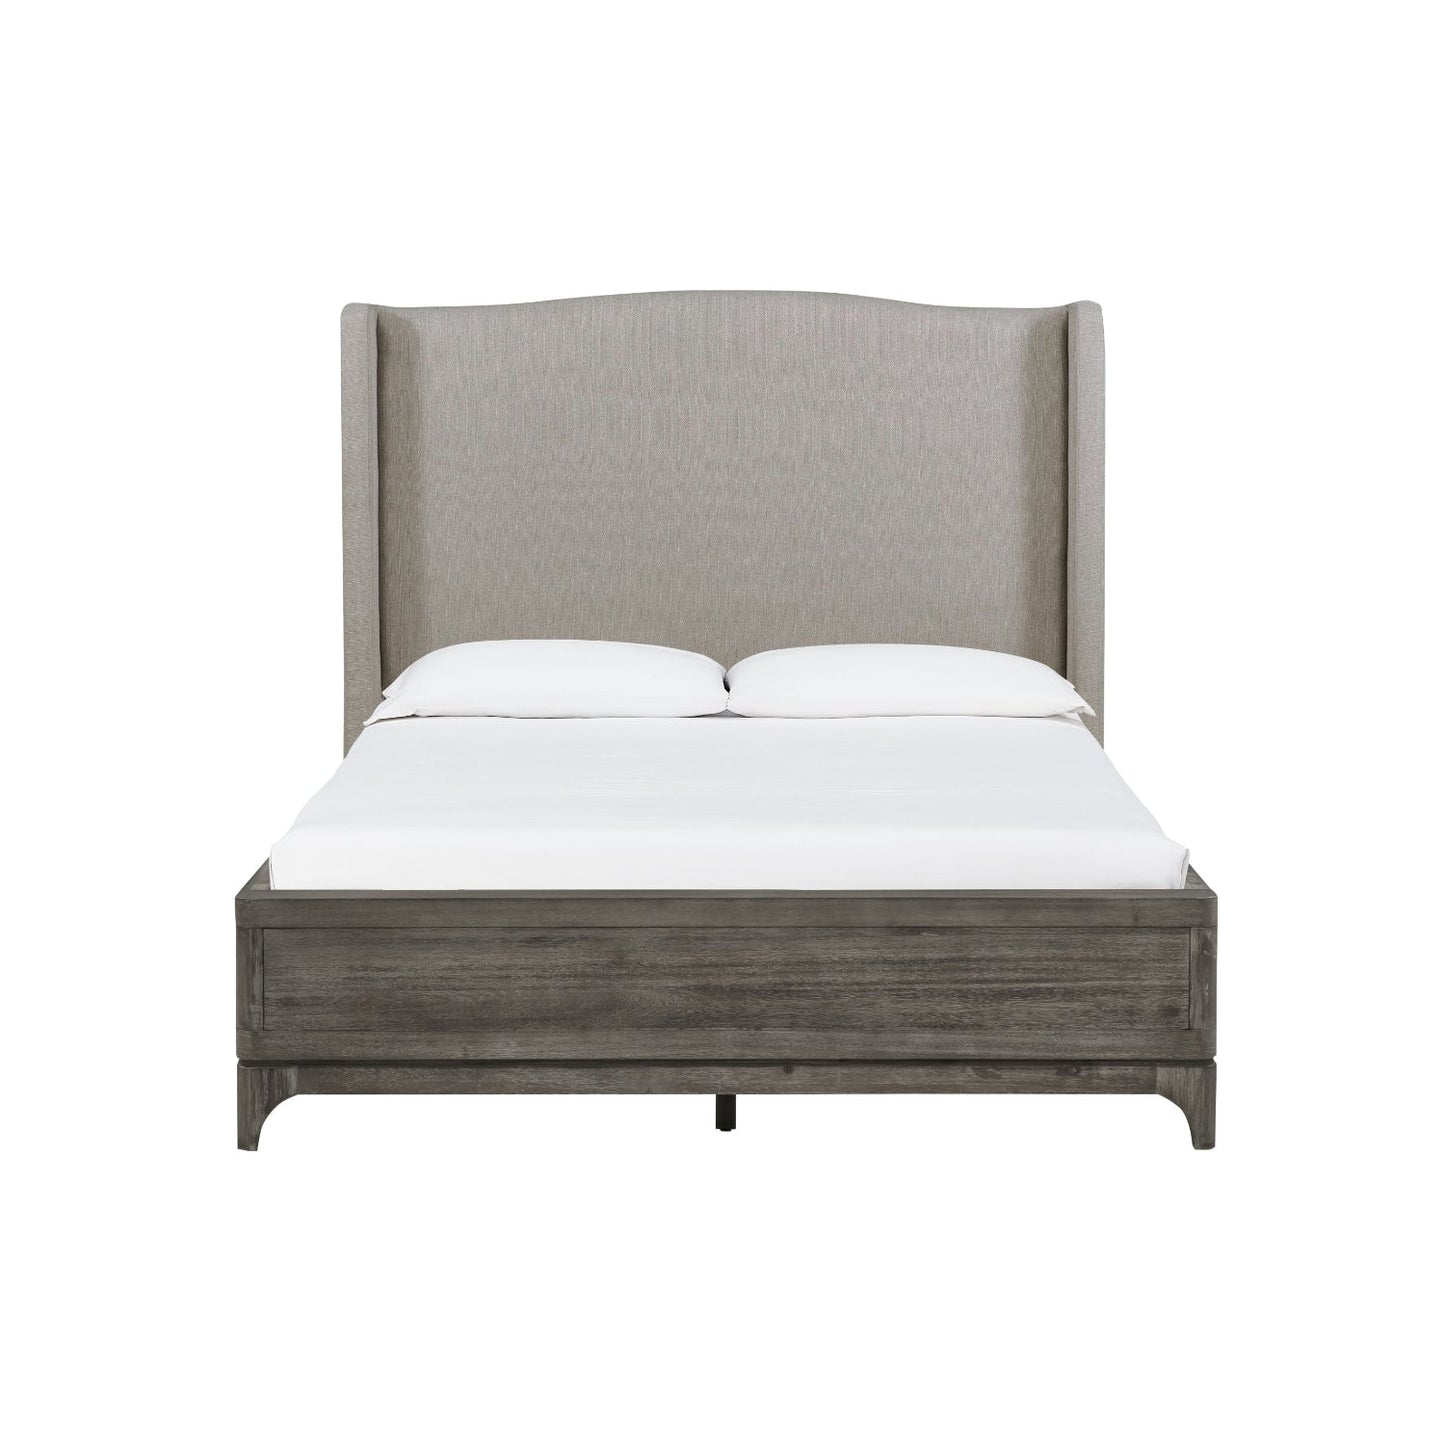 Modus Cicero 6PC Queen Upholstered Bedroom Set in Rustic Latte